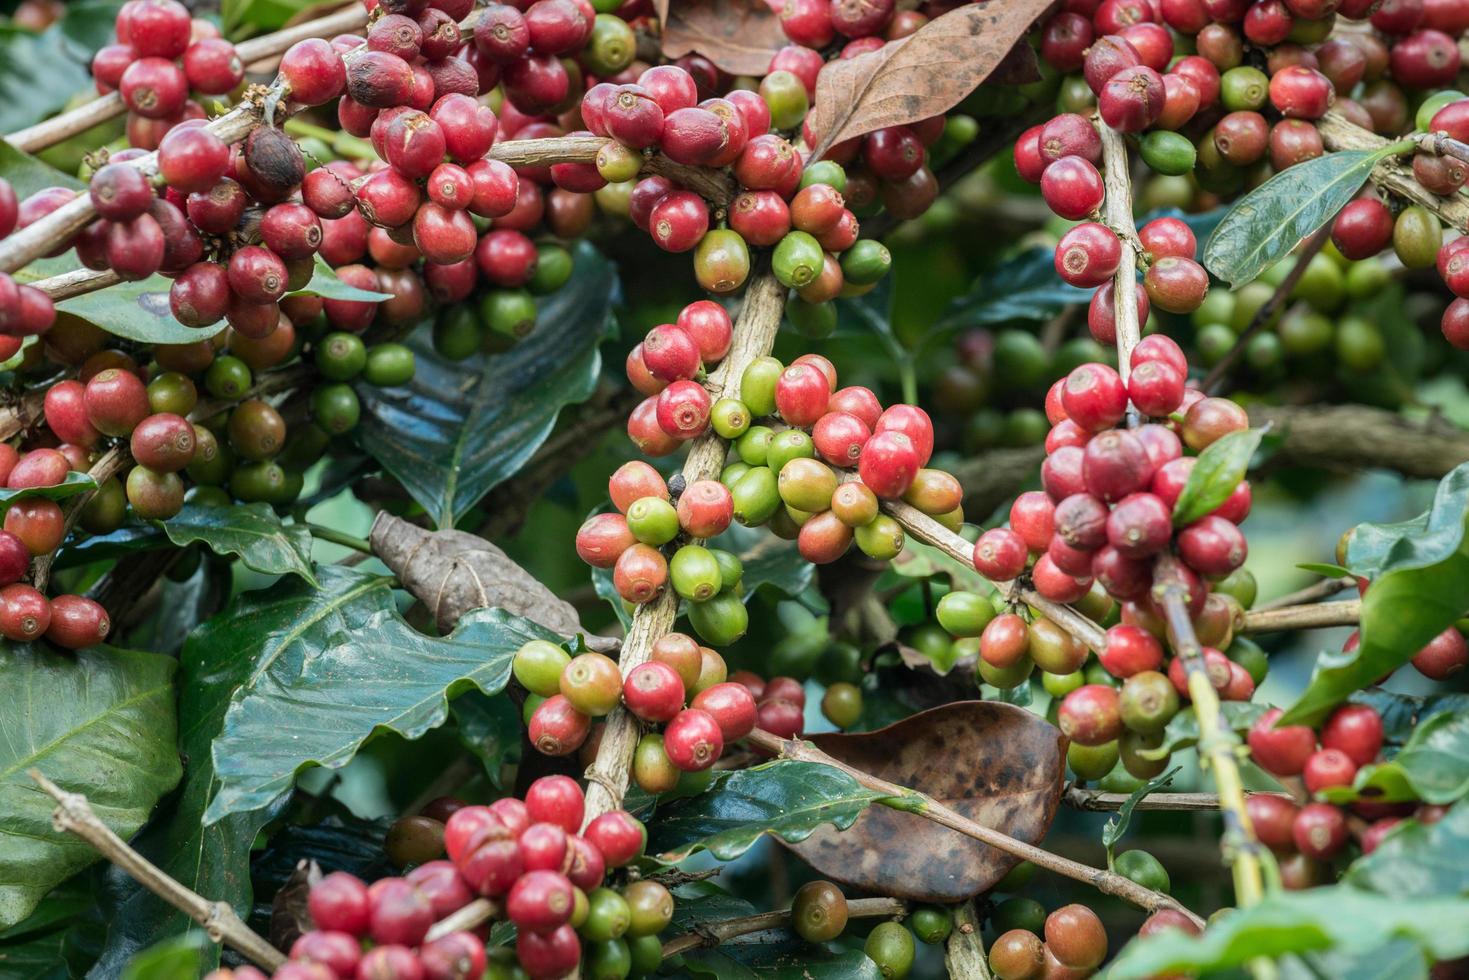 coffea boom is een geslacht van bloeiend planten van wie zaden, gebeld koffie bonen, zijn gebruikt naar maken divers koffie dranken en producten. foto